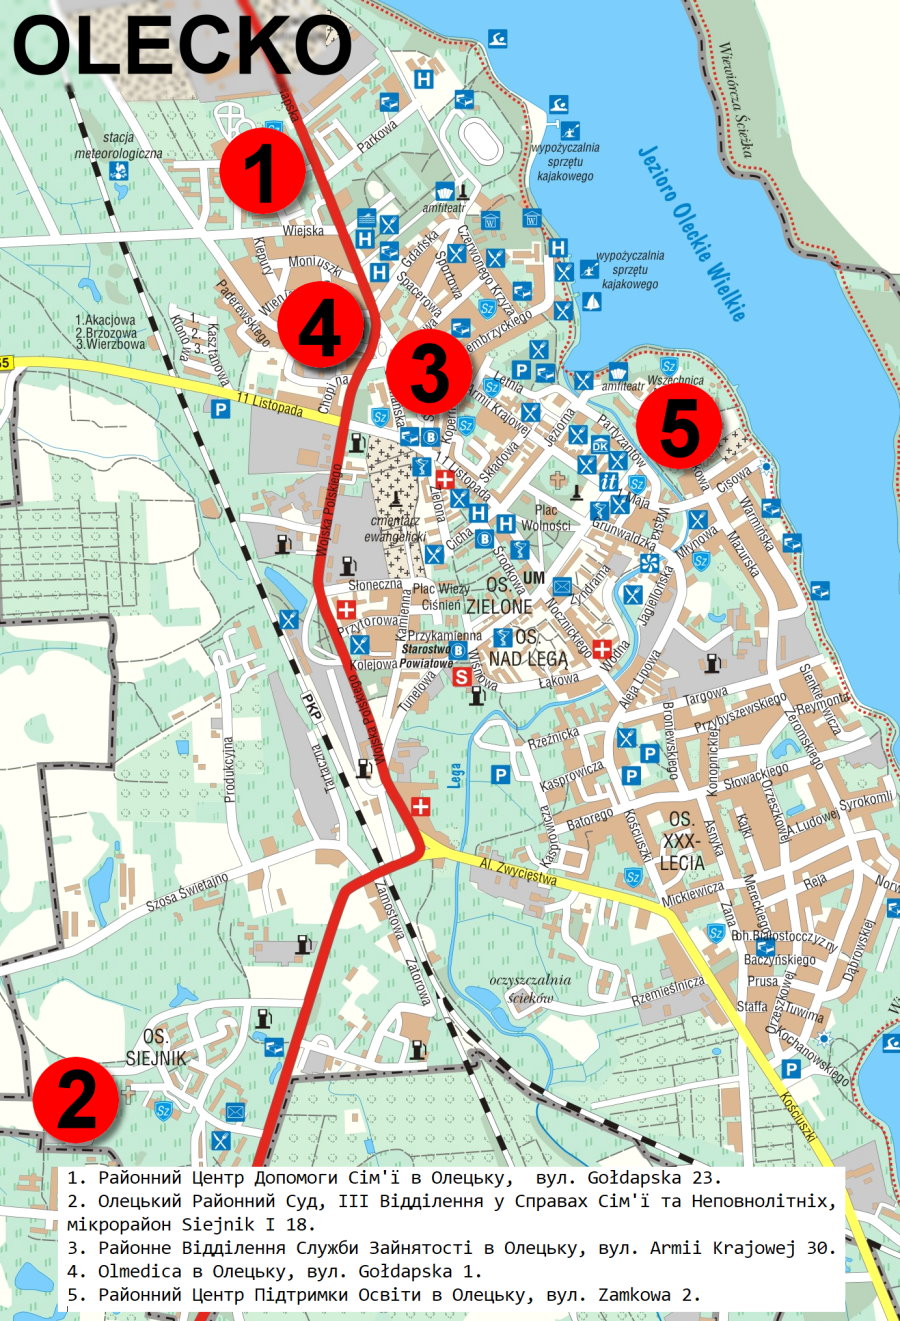 Mapa miasta Olecka. Jest na niej zaznaczonych 5 punktów. Mają one cyfry od 1 do 5. W legendzie mapy przy każdej z cyfr jest wpisana nazwa instytucji w języku ukraińskim.